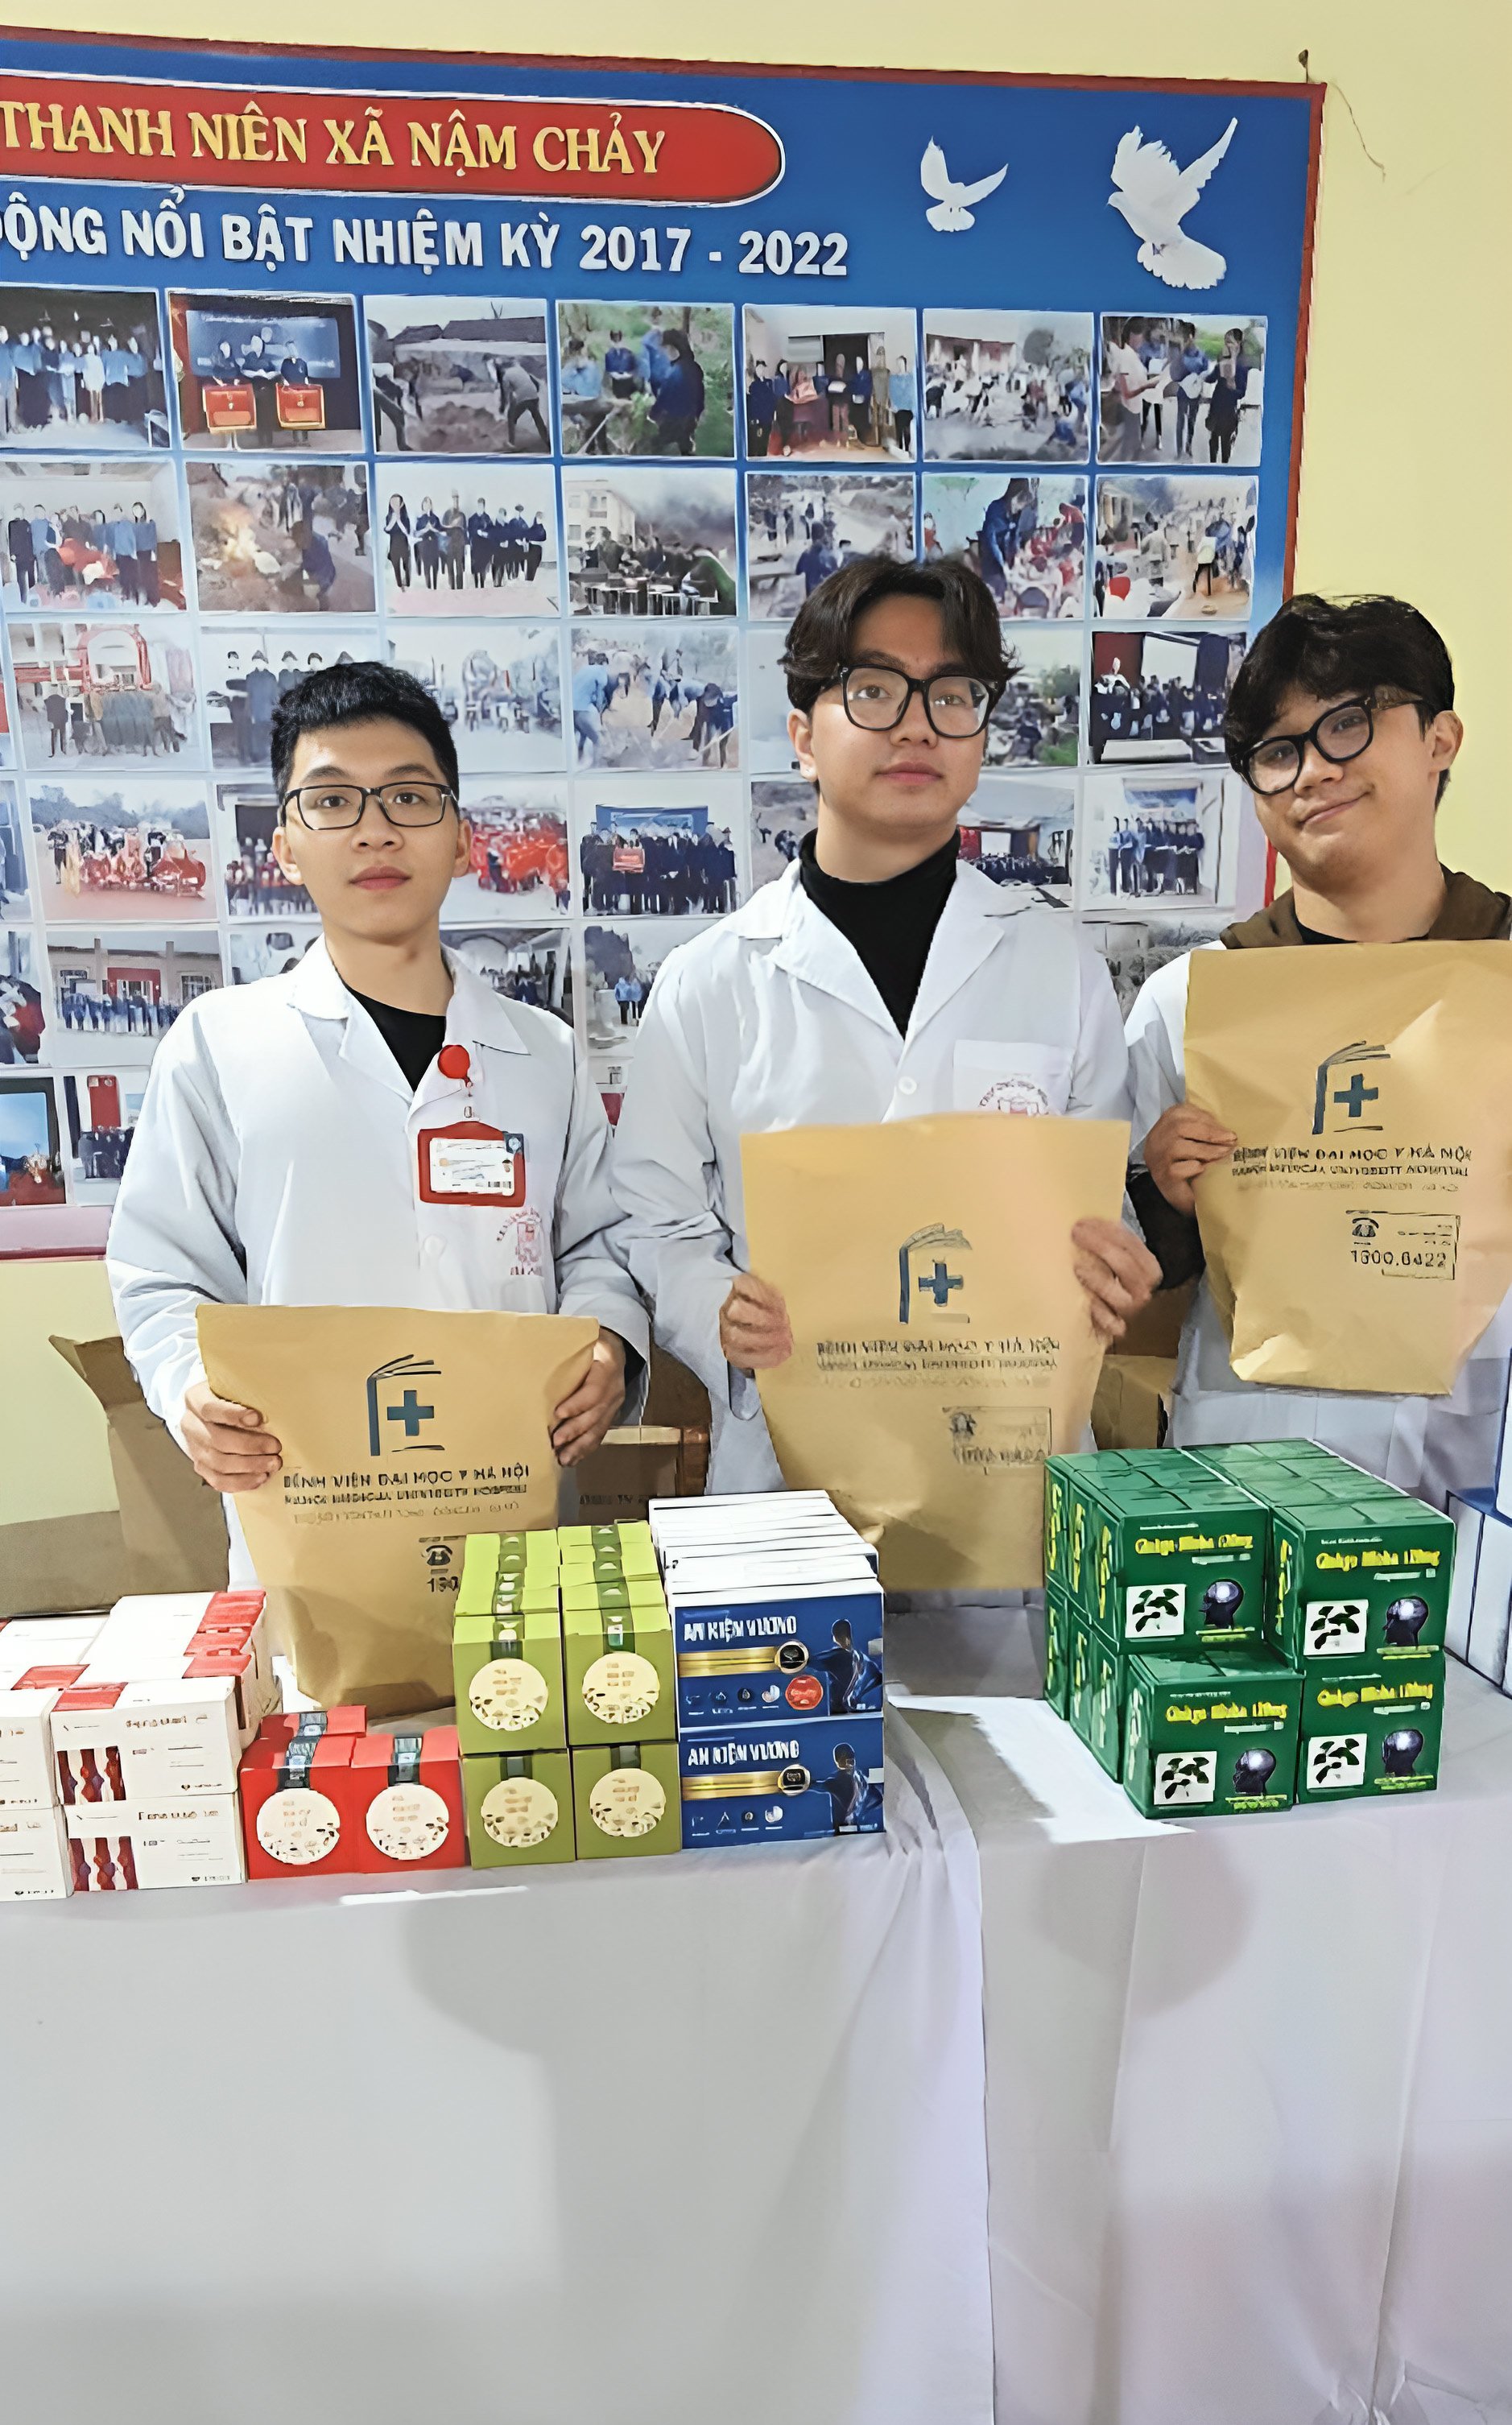 Sản phẩm của Dược phẩm Thái Minh đã được các bác sĩ và tình nguyện viên của bệnh viện Đại học y Hà Nội trao tận tay tới người dân.